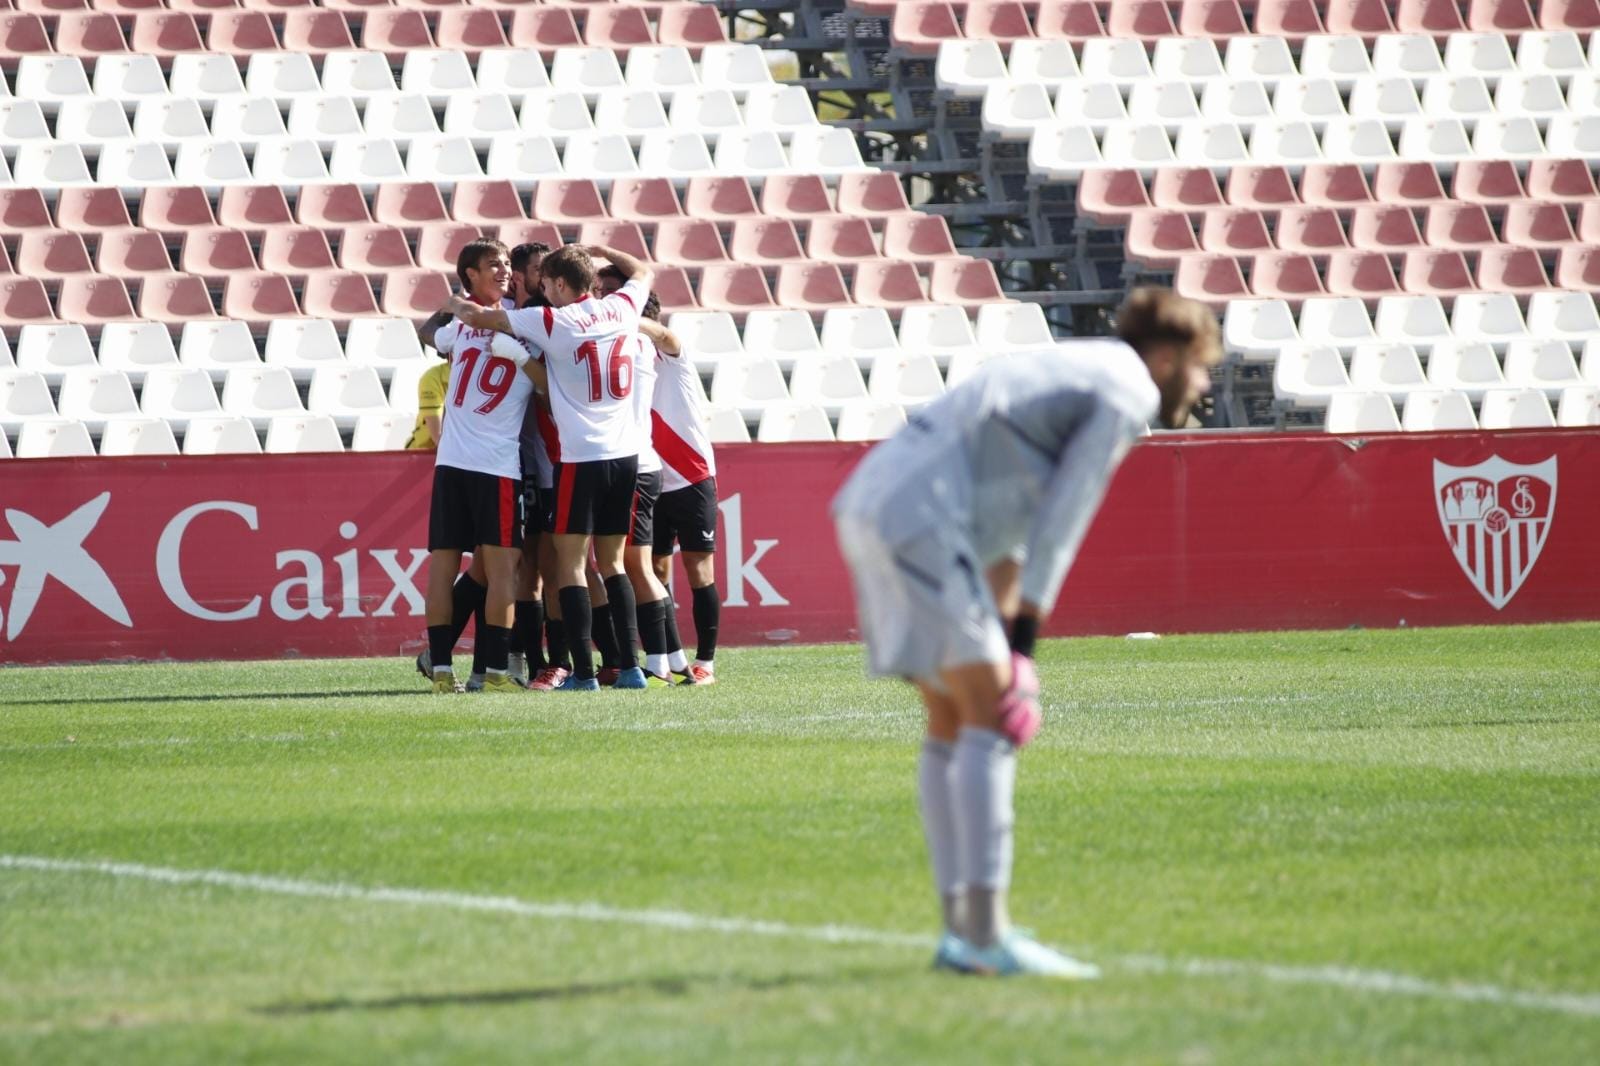 Imagen del Sevilla Atlético frente al Recreativo Granada